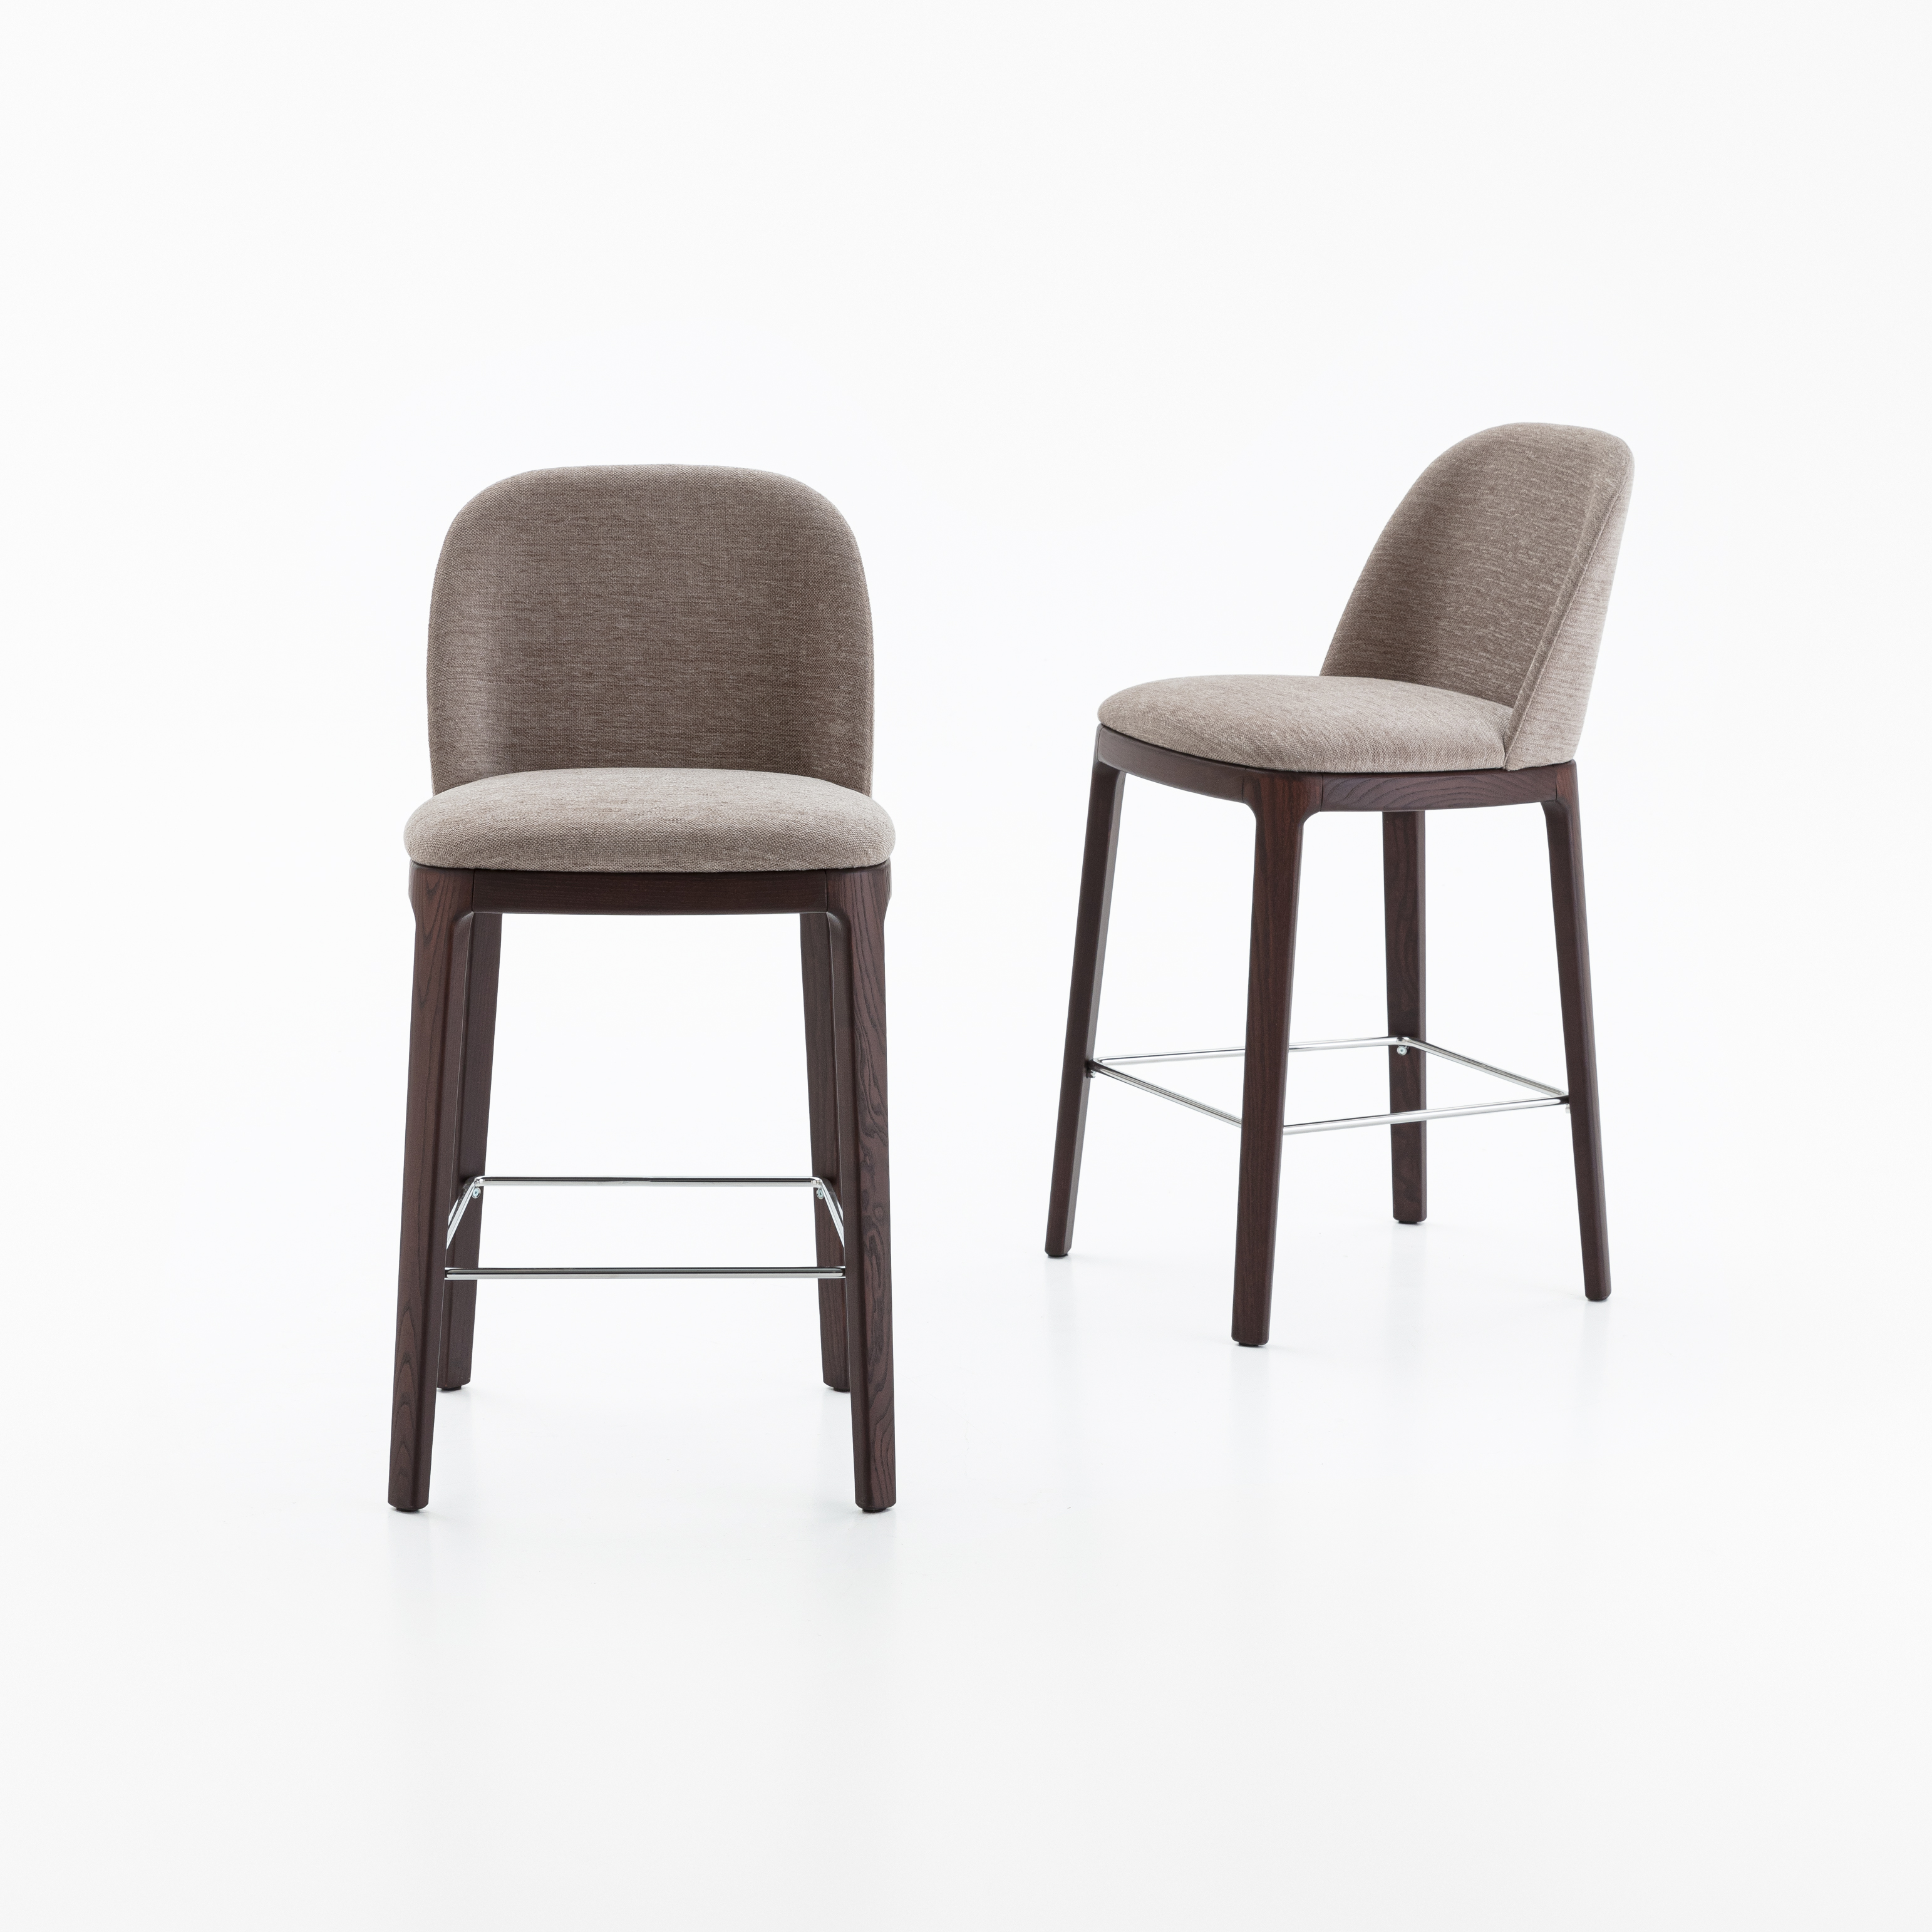 Joelle stools | Dallagnese